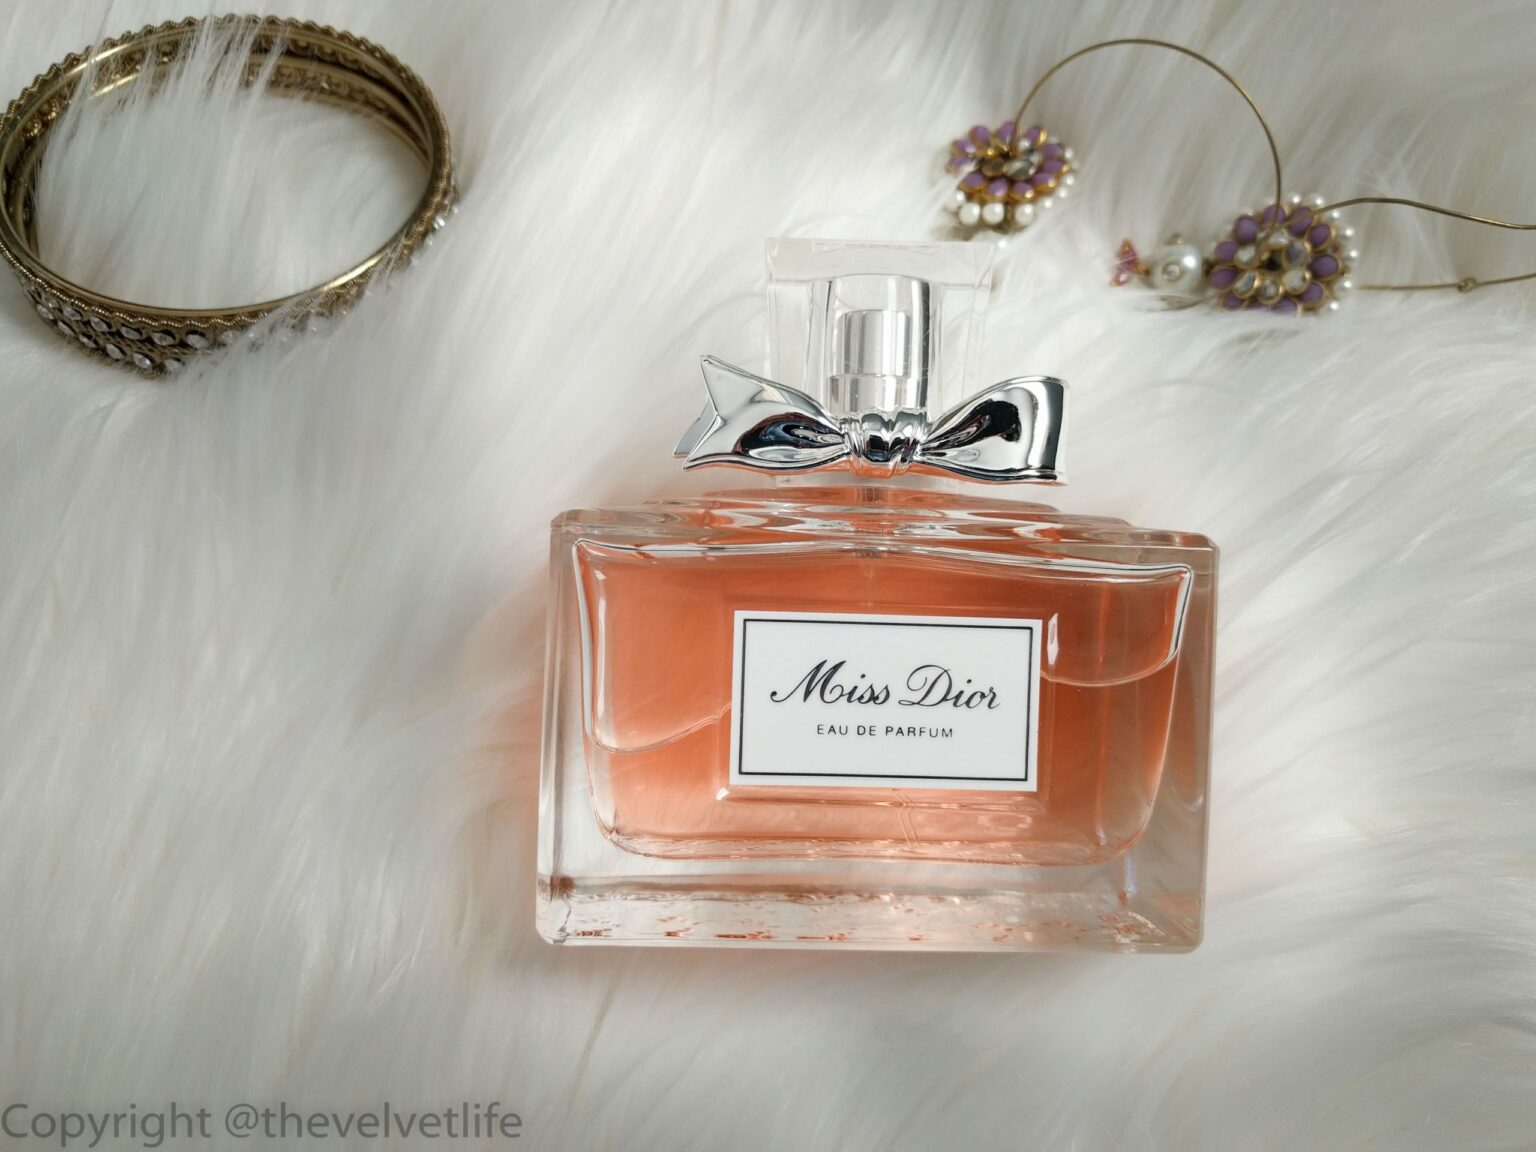 Miss Dior - Smells Like Love, Really? - The Velvet Life